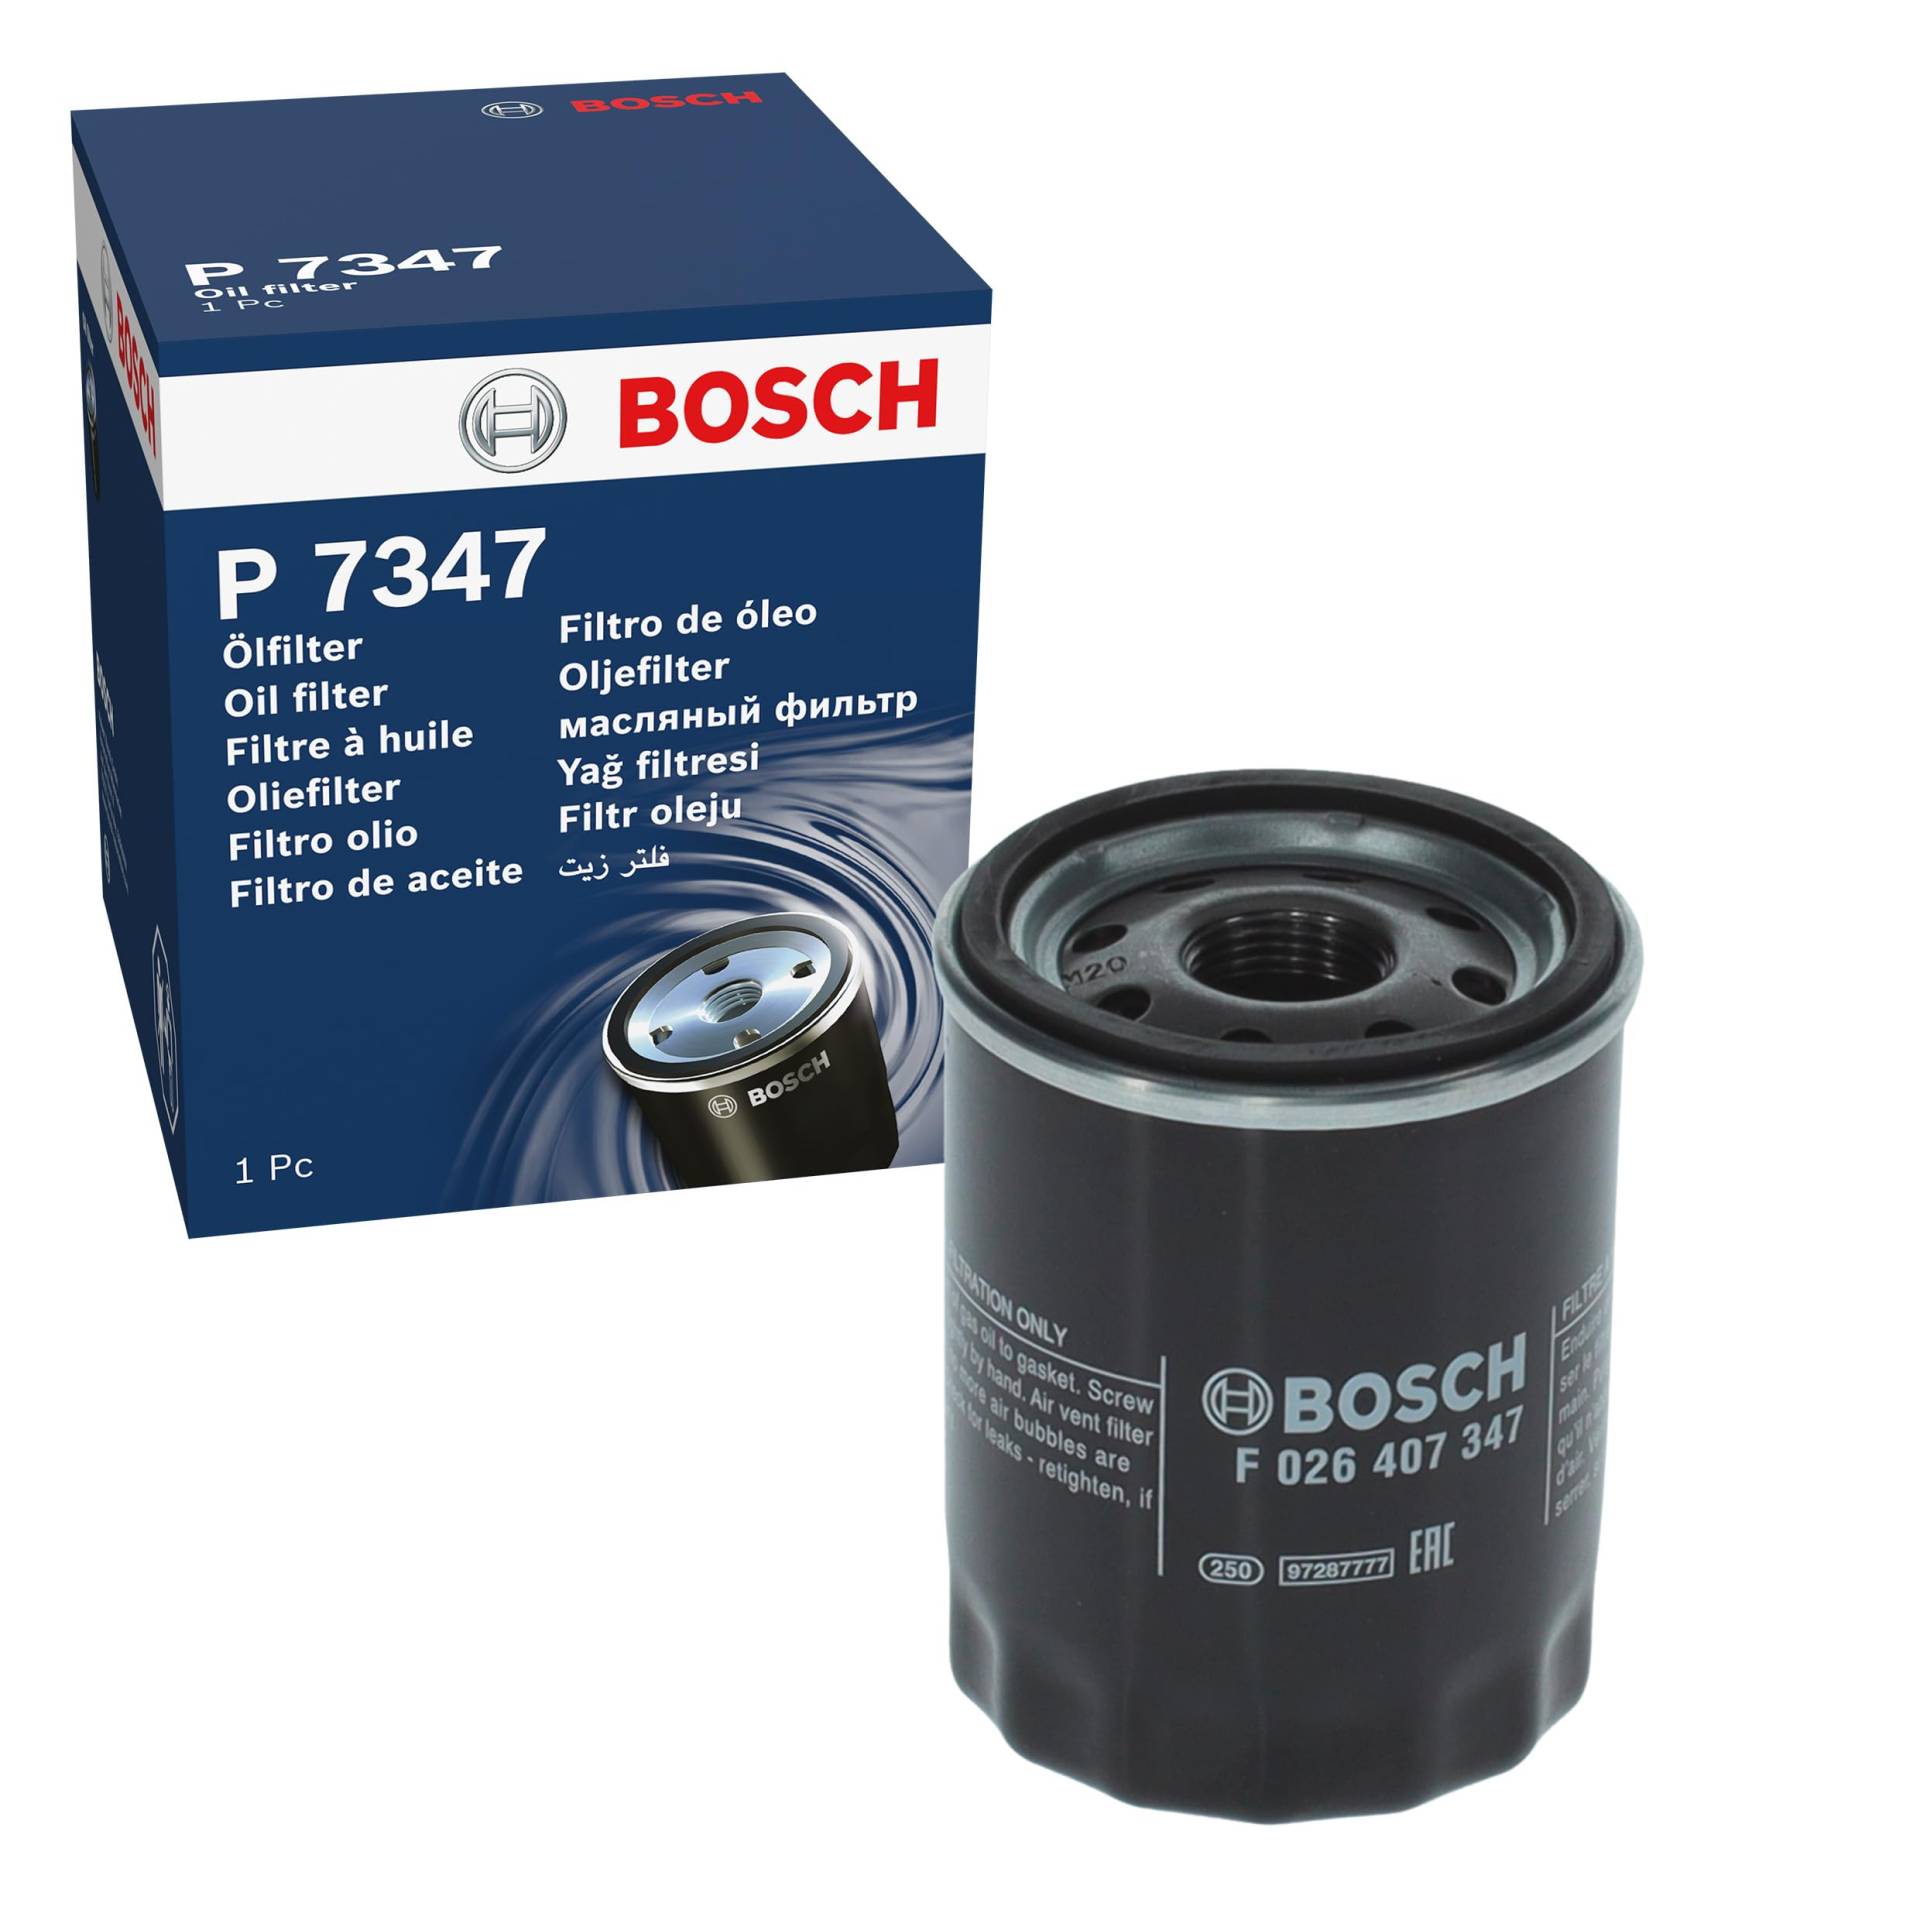 Bosch P7347 - Ölfilter Auto von Bosch Automotive